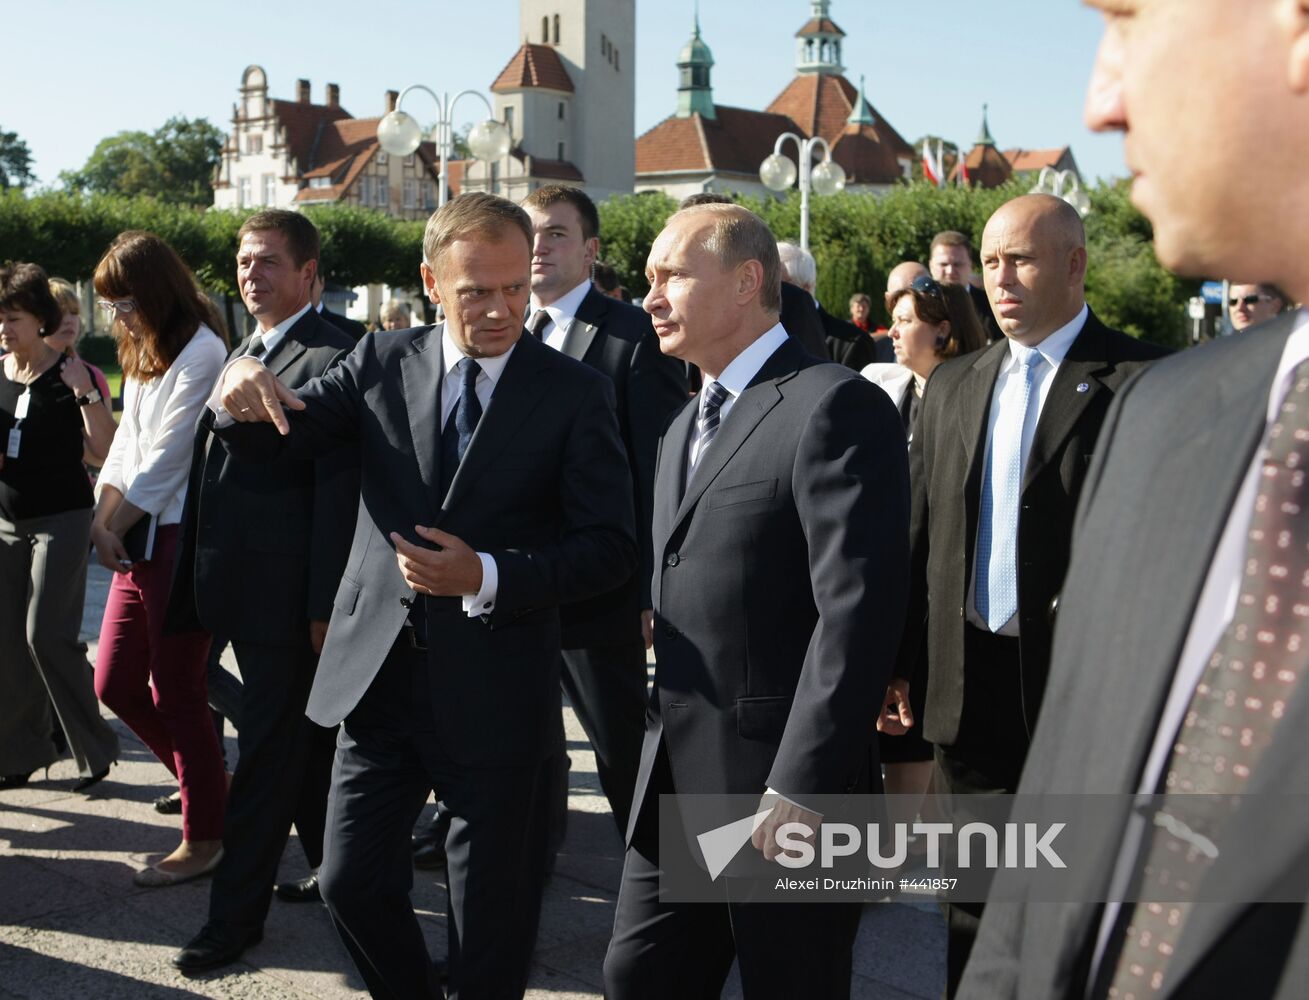 Vladimir Putin paying a working visit to Poland